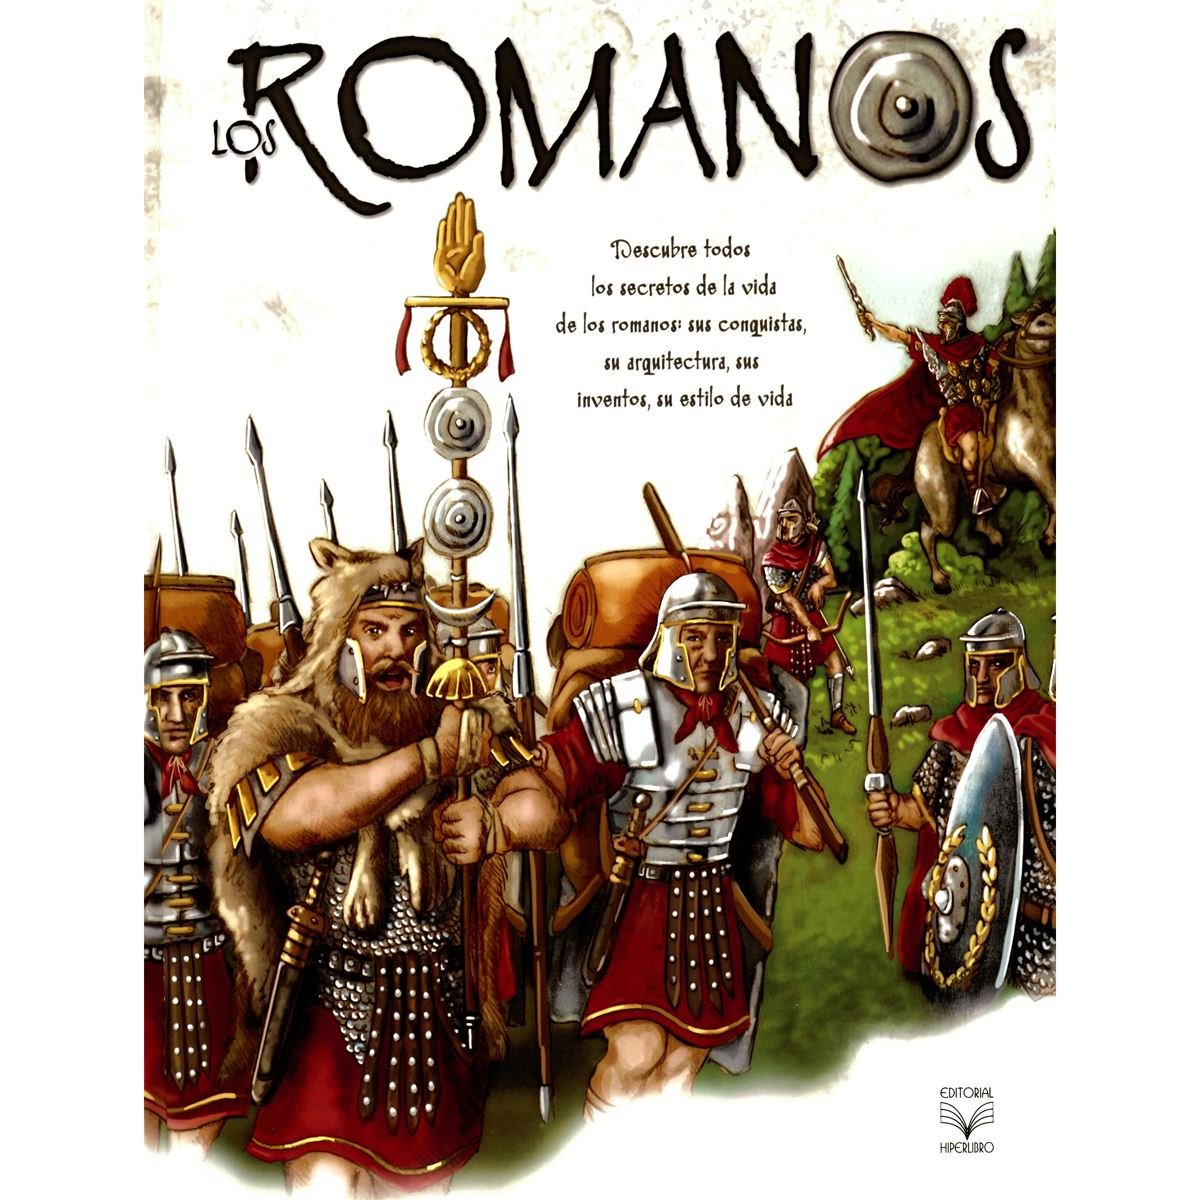 Los romanos (Descubriendo)